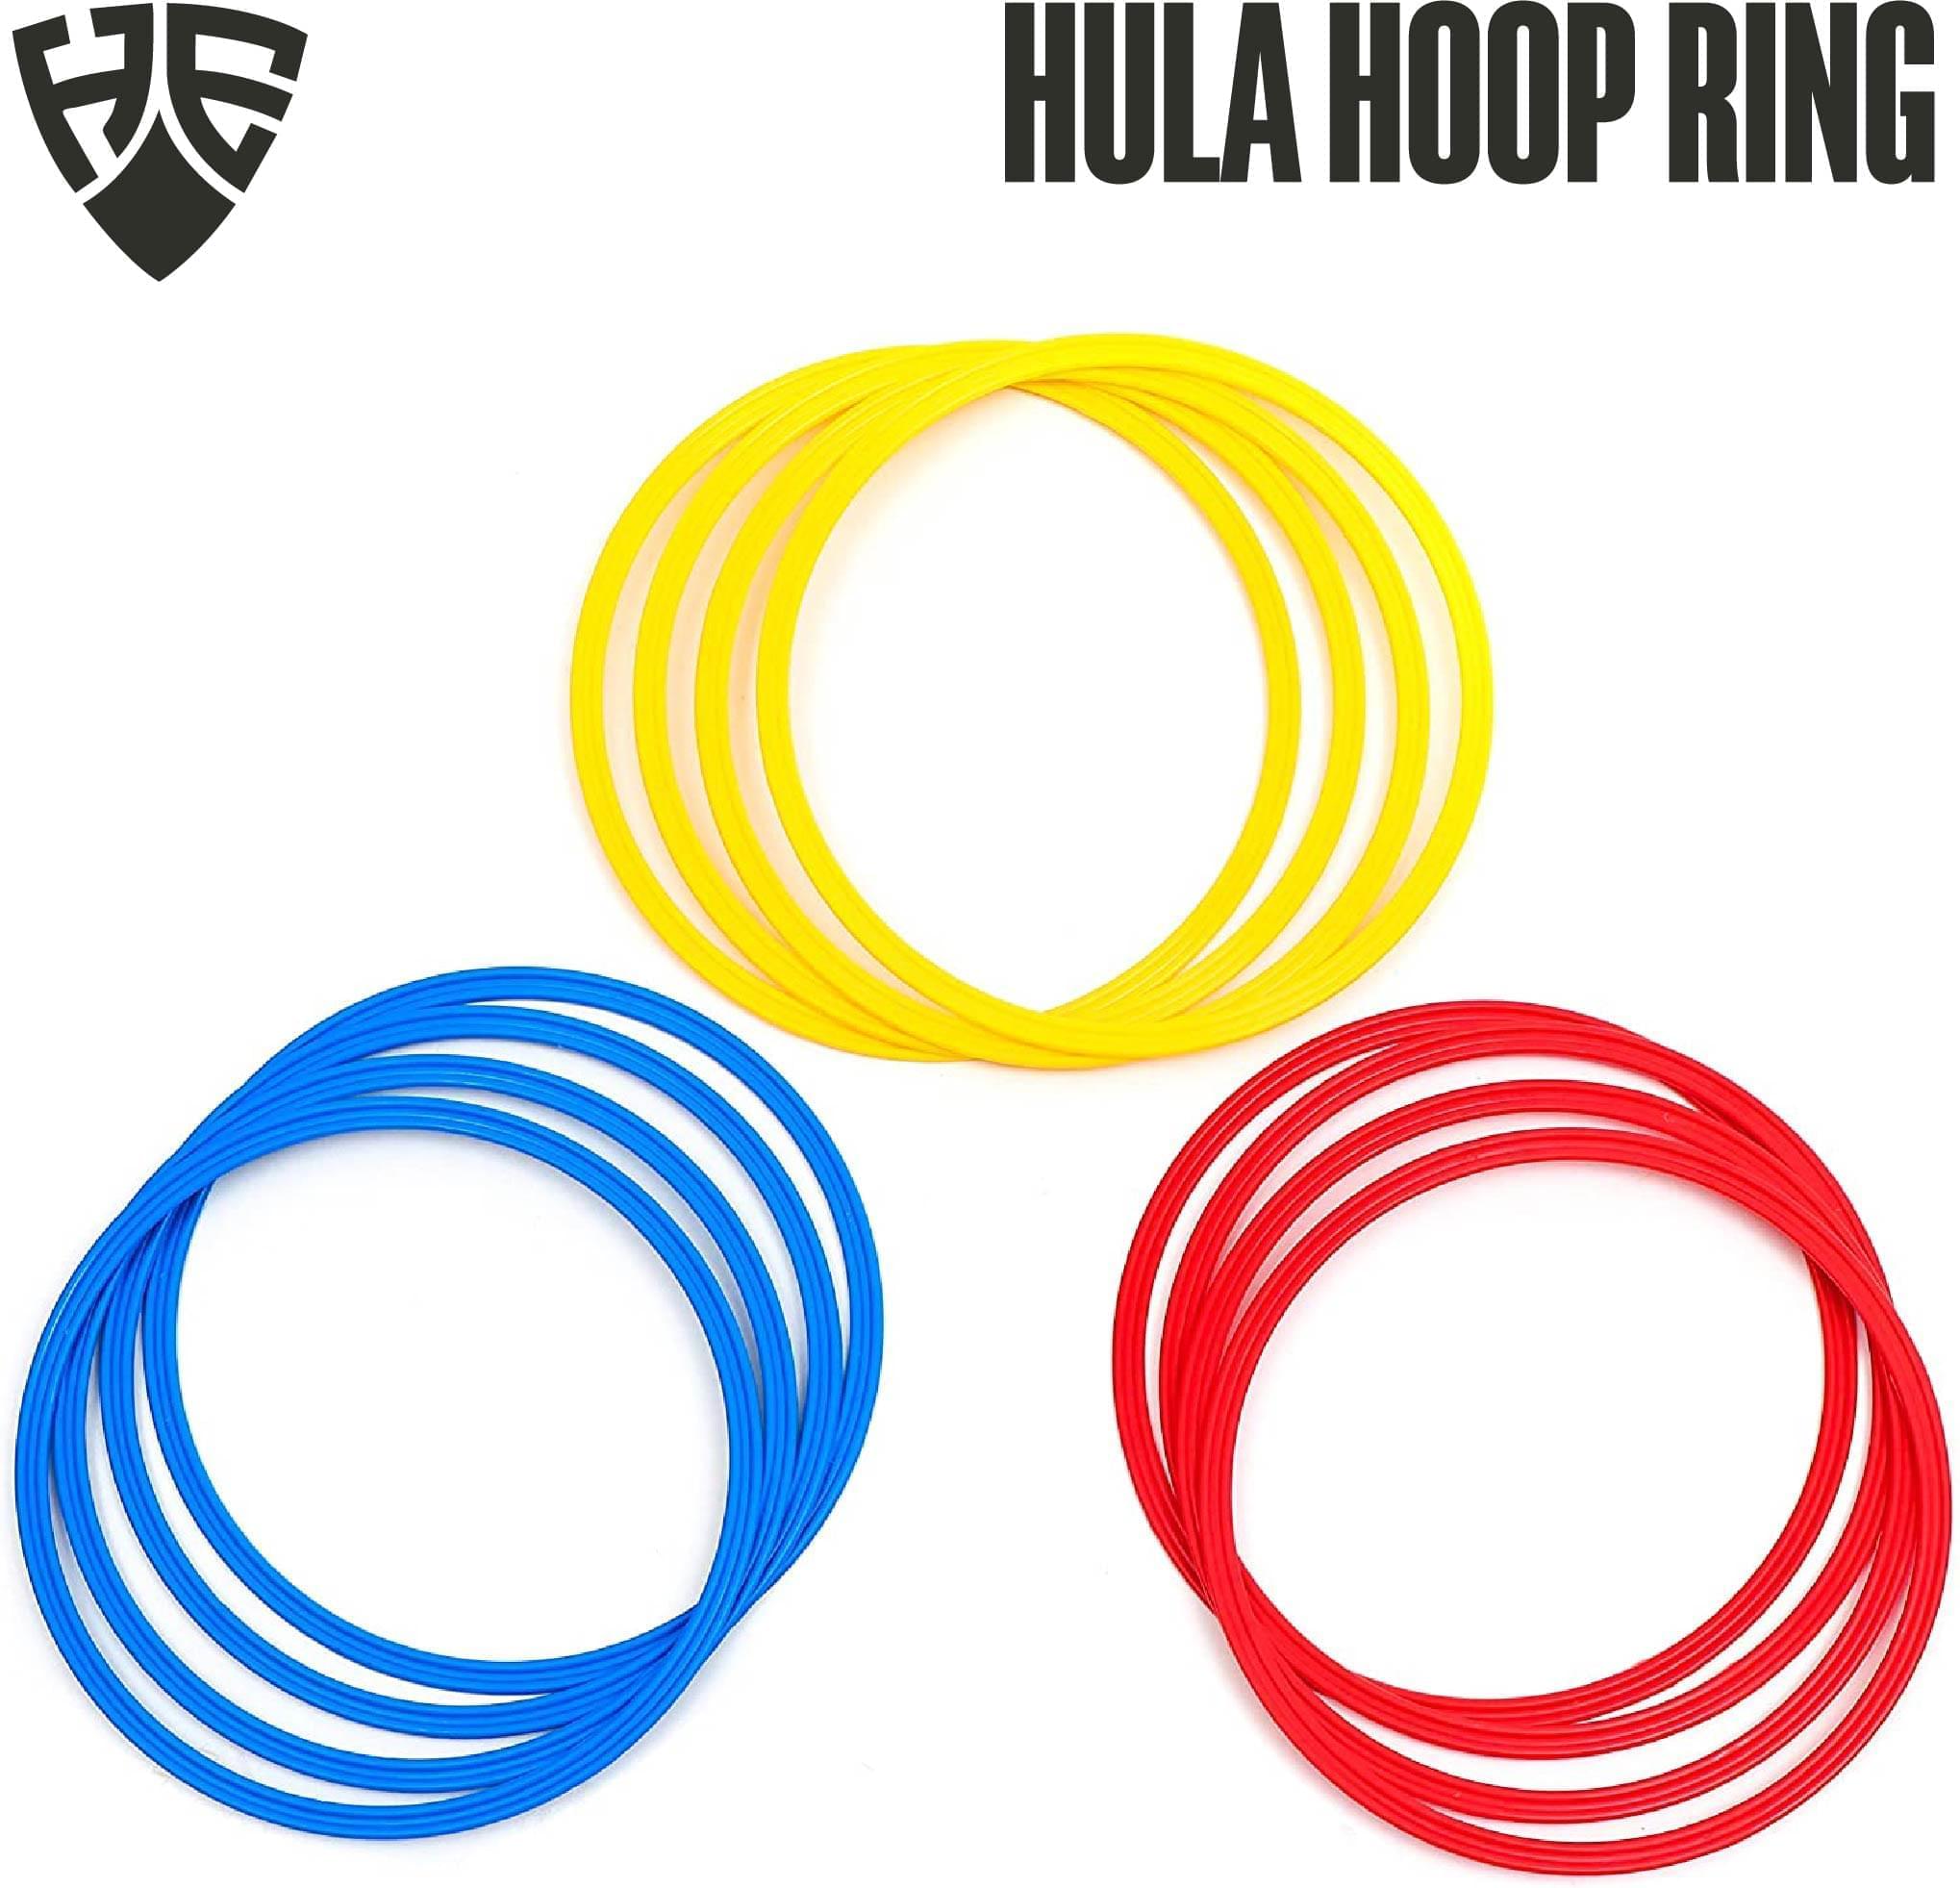 Adjustable Size Hula Hoop Rings